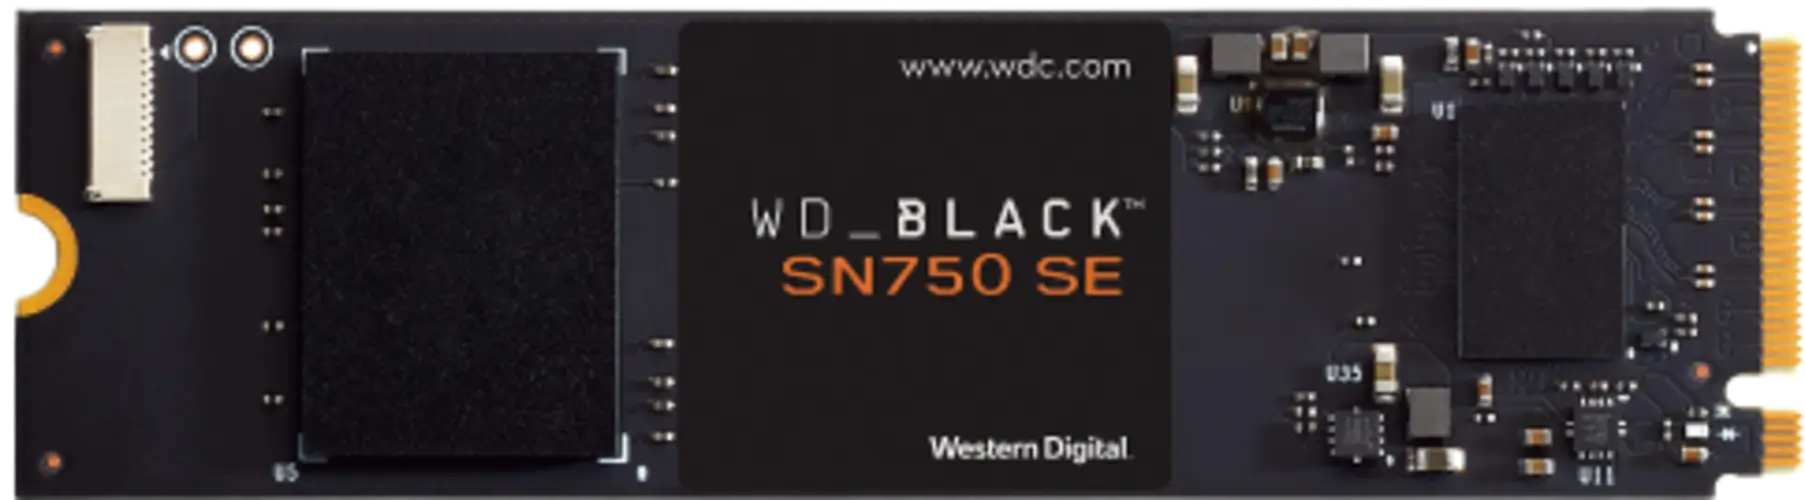 هارد WD_BLACK SN750 SE - واحد تيرا (1TB) - بدون ملصق